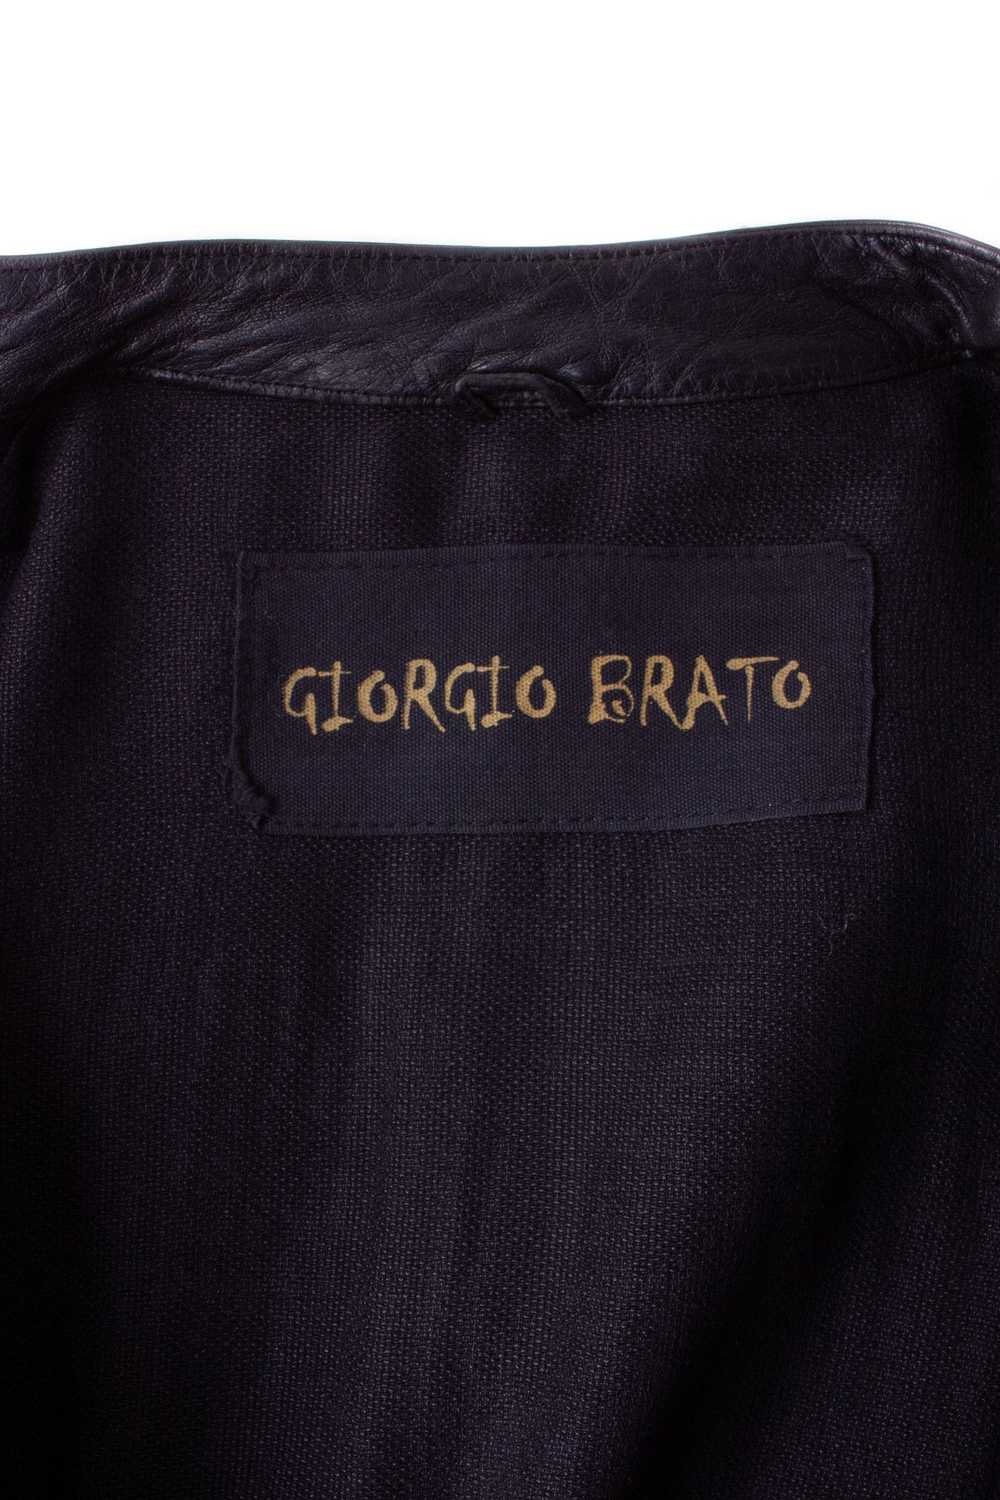 Giorgio Brato GIORGIO BRATO BLACK LEATHER JACKET - image 10